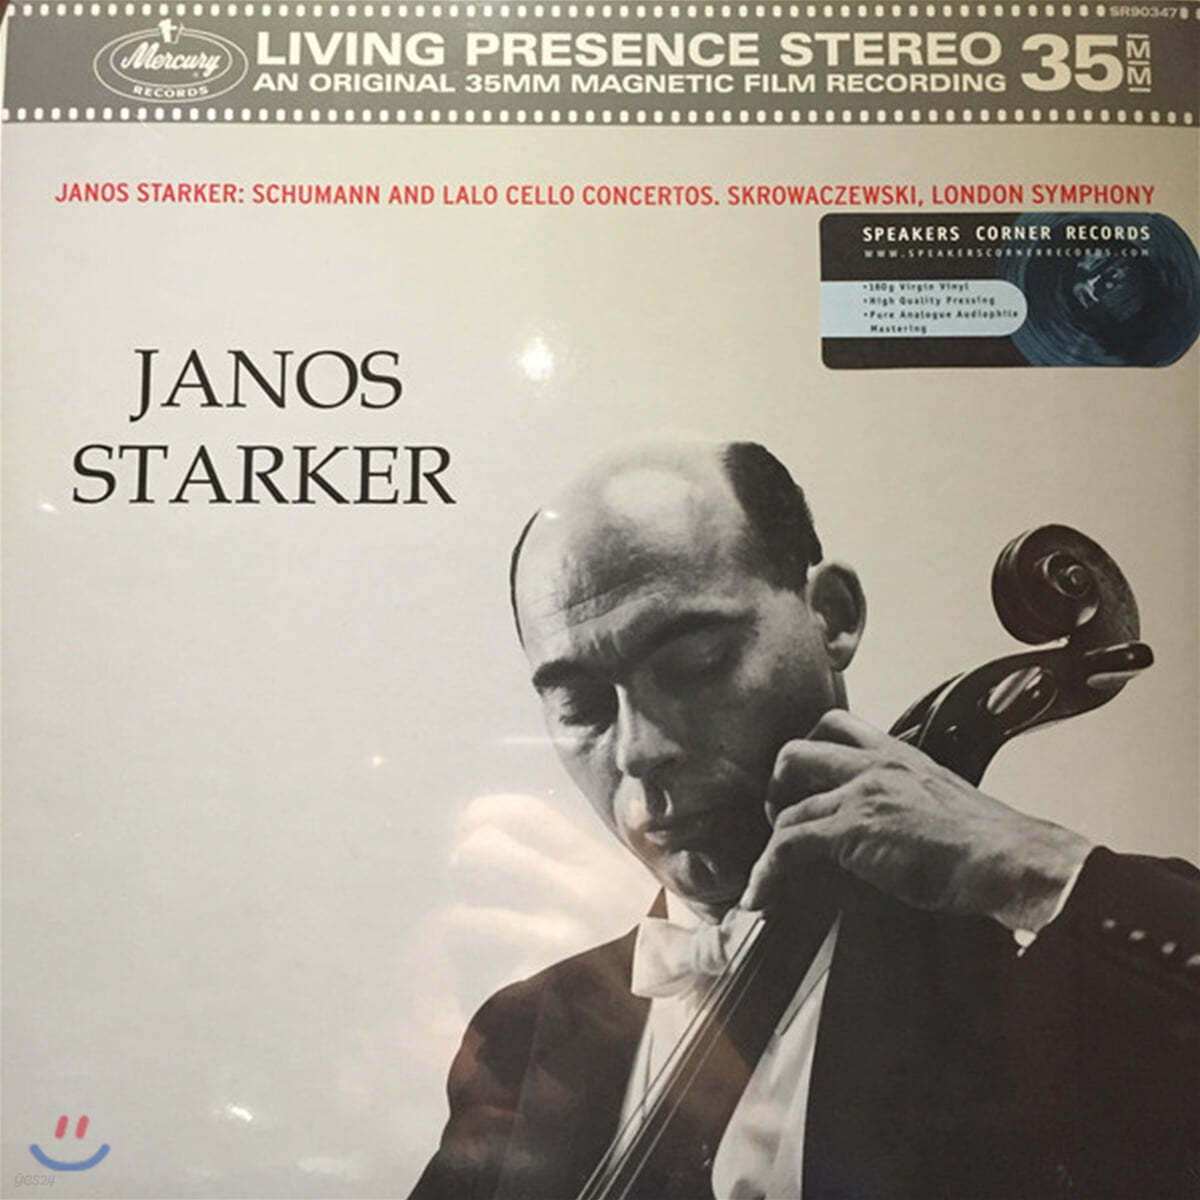 Janos Starker 슈만 / 랄로: 첼로 협주곡 - 야노스 슈타커 (Schumann / Lalo: Cello Concerto) [LP]